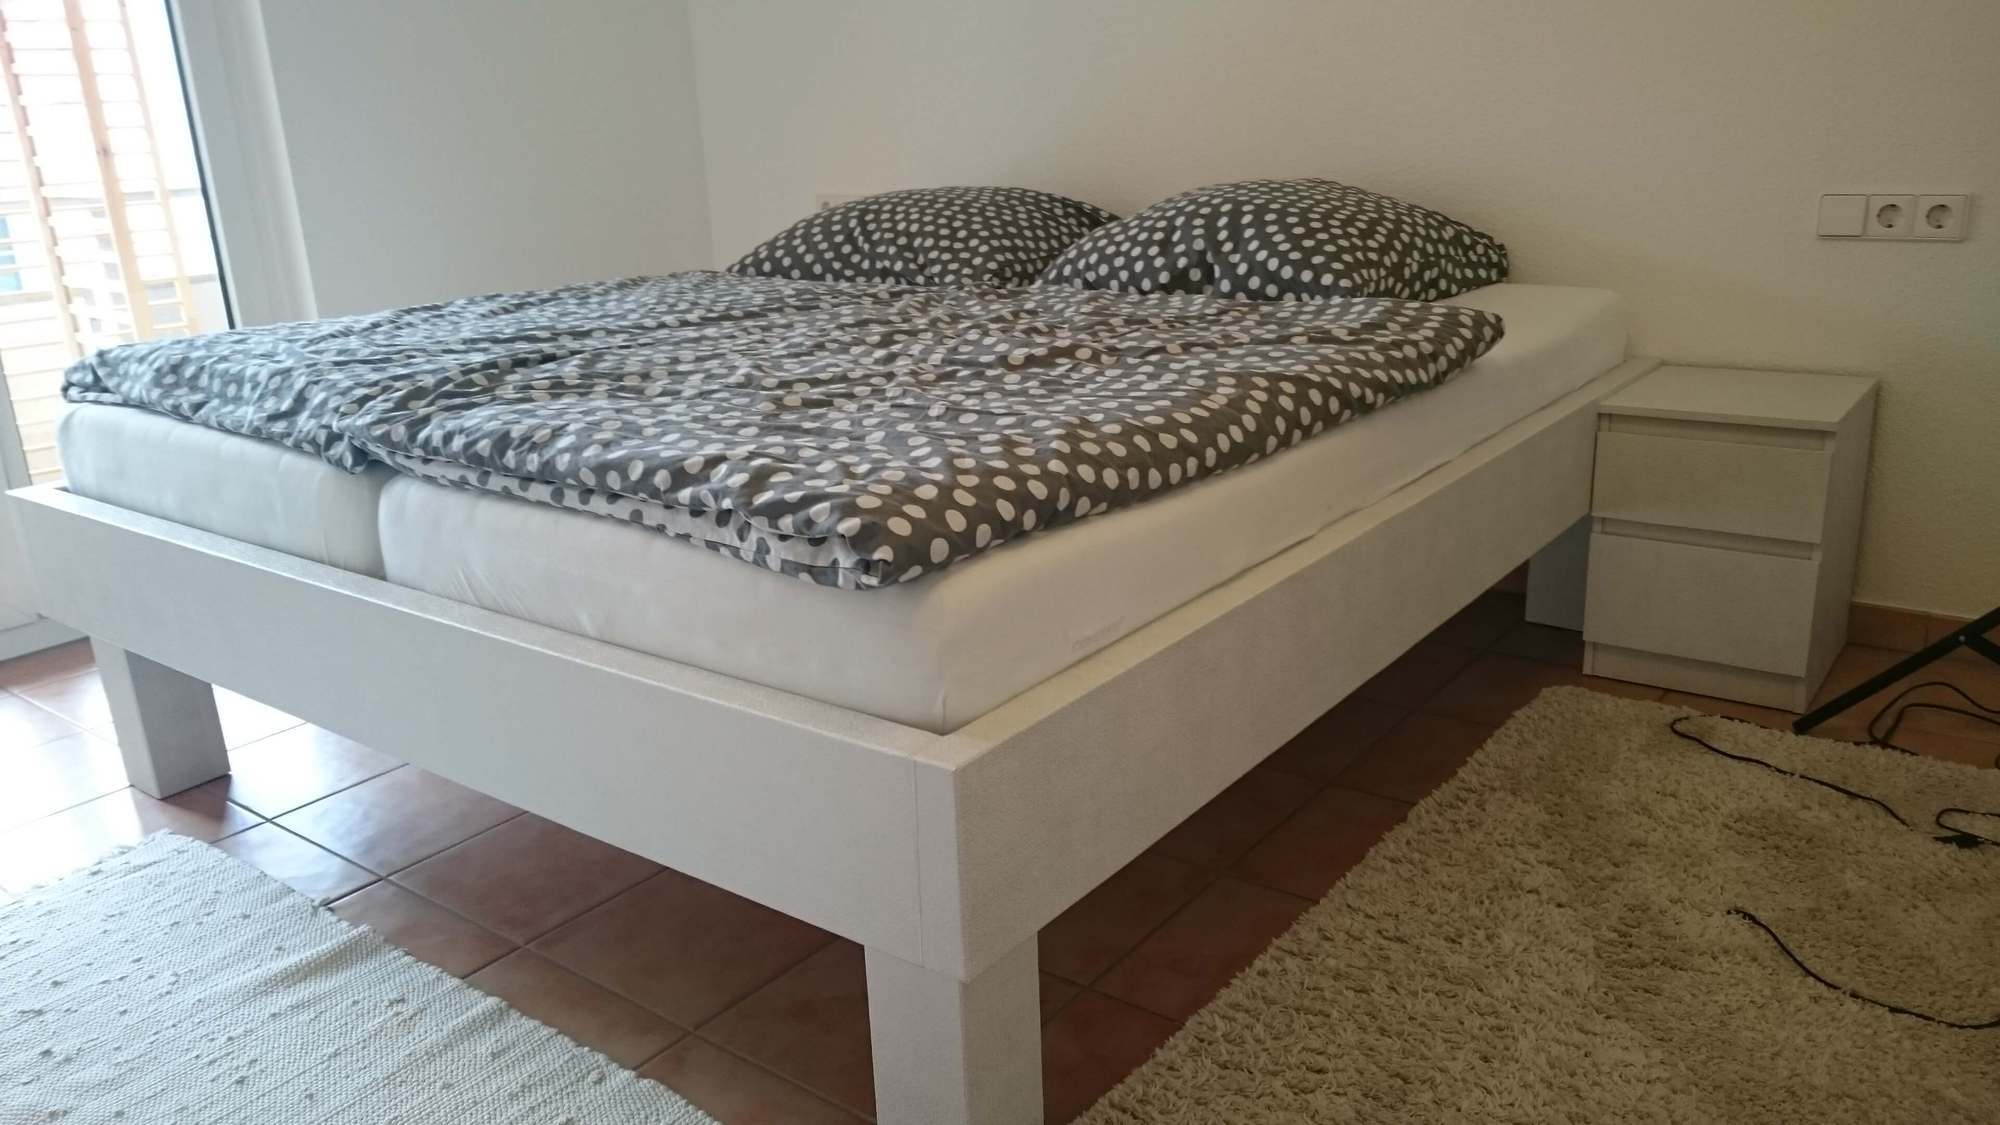 Klebefolie für Möbel gestaltet Bett und Schränke neu durch einfaches bekleben